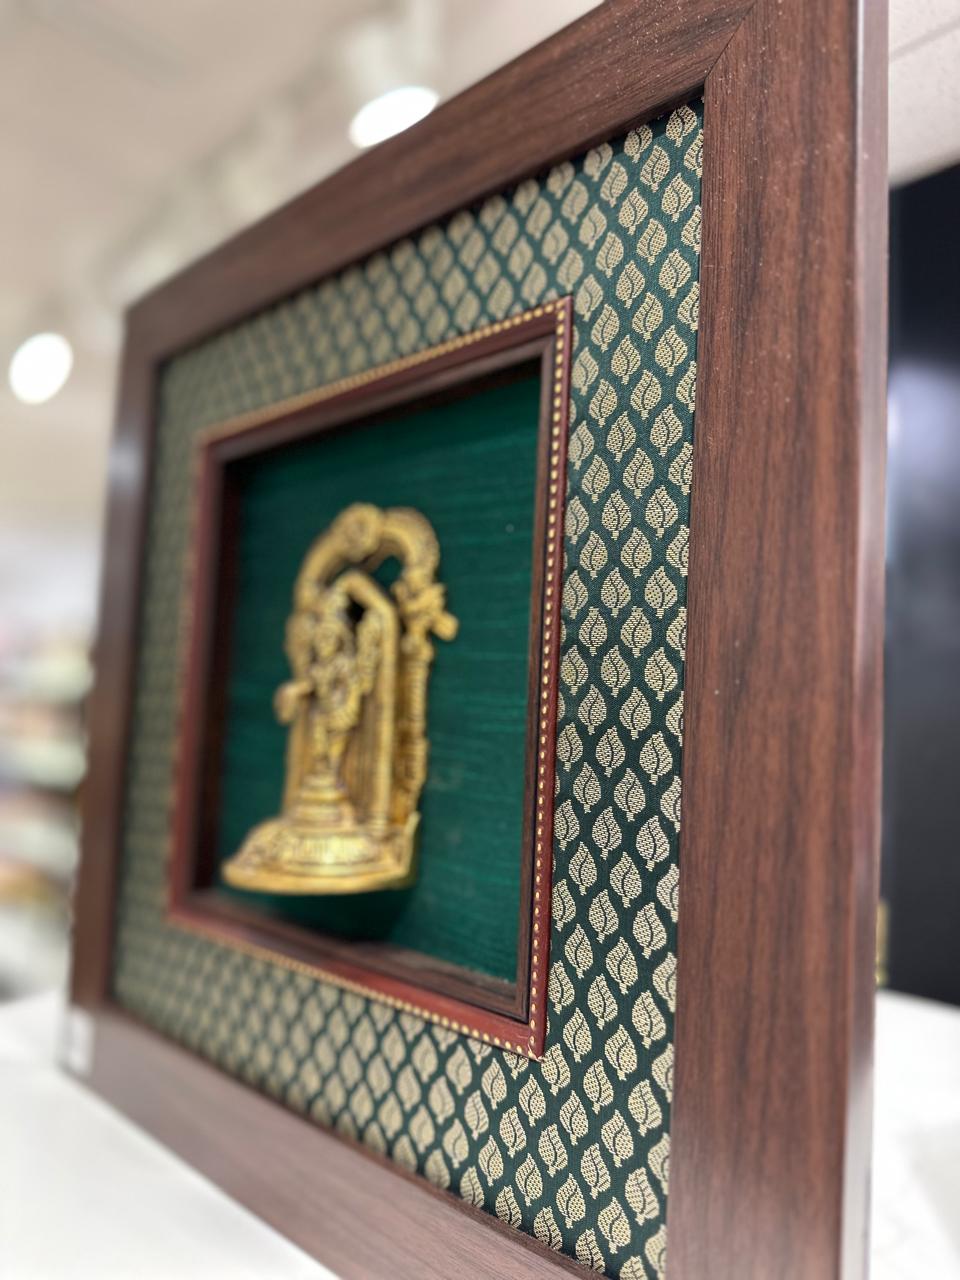 Lord Venkateshwara silk frame with brass idol